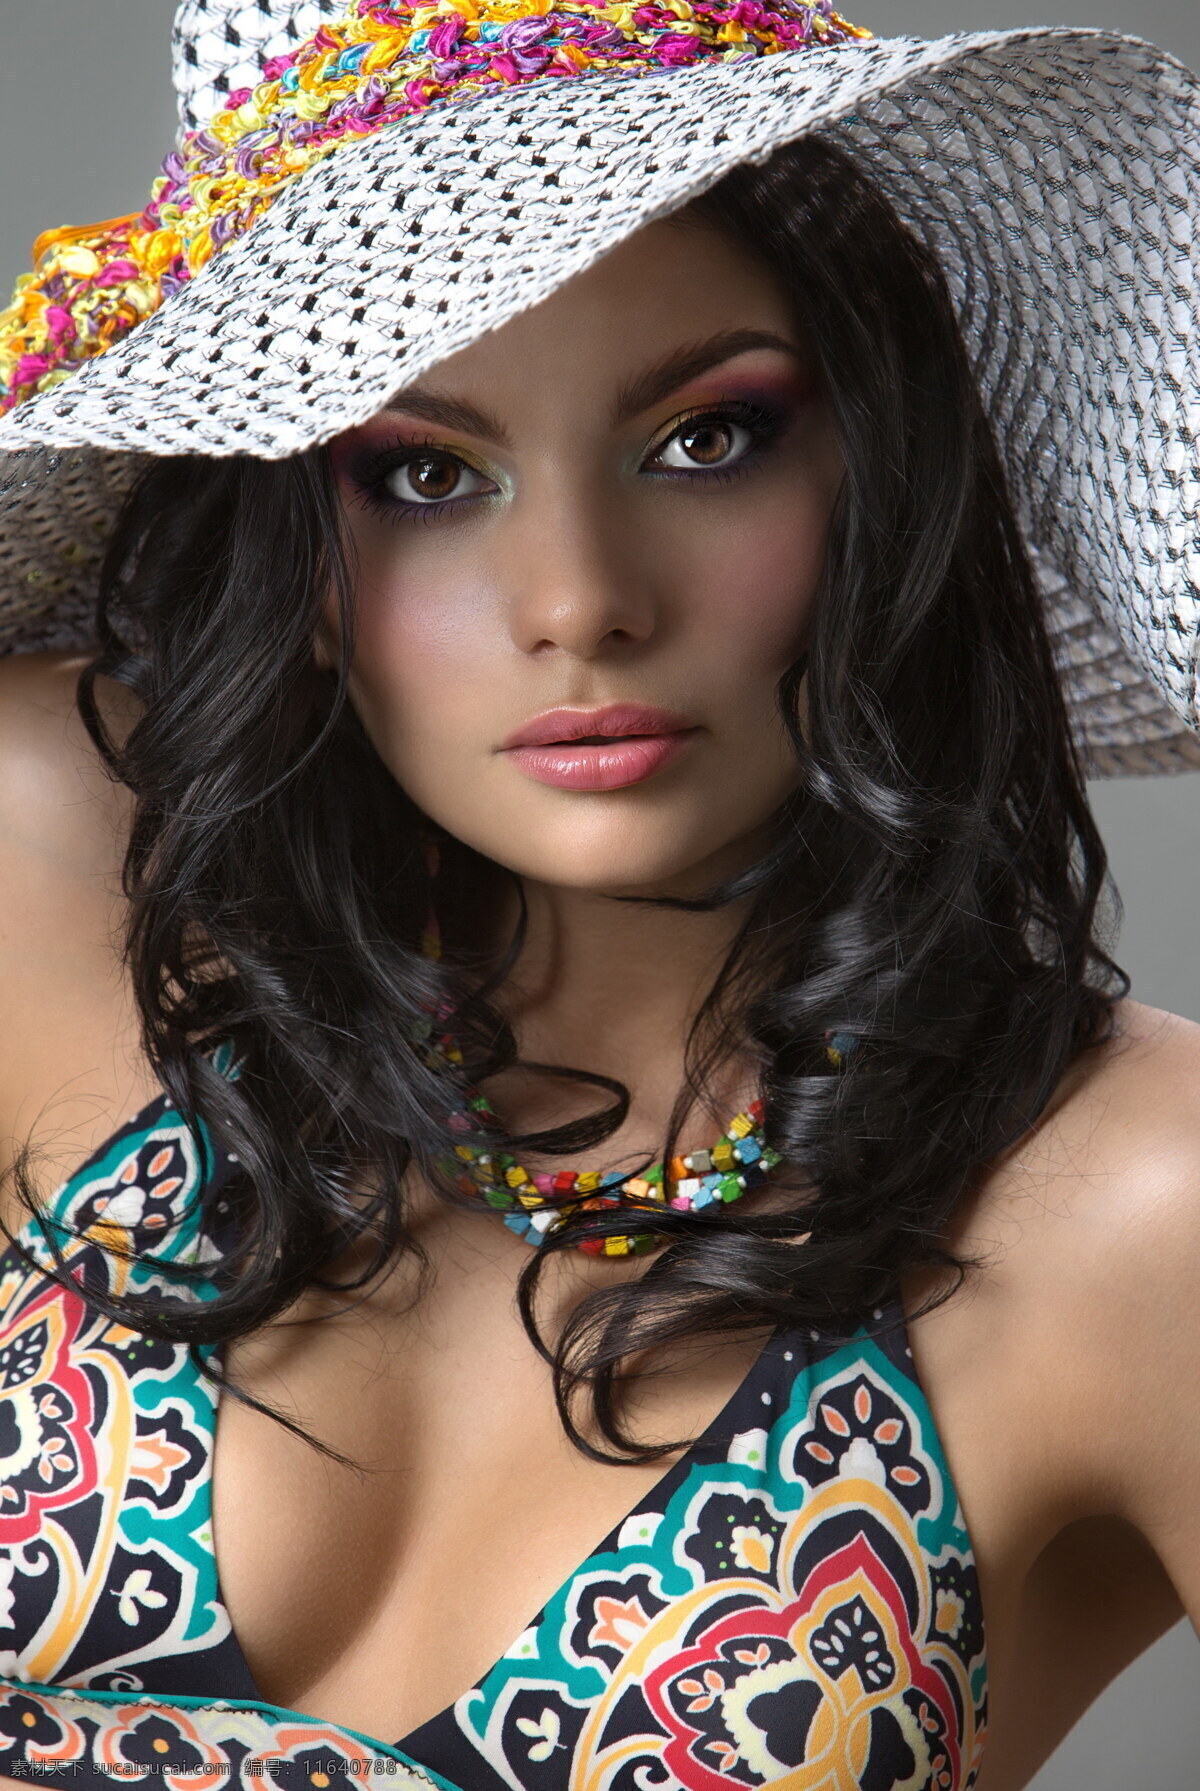 戴帽子 卷发 美女图片 卷发美女 性感美女 外国美女 长发美女 外国人 人物图片